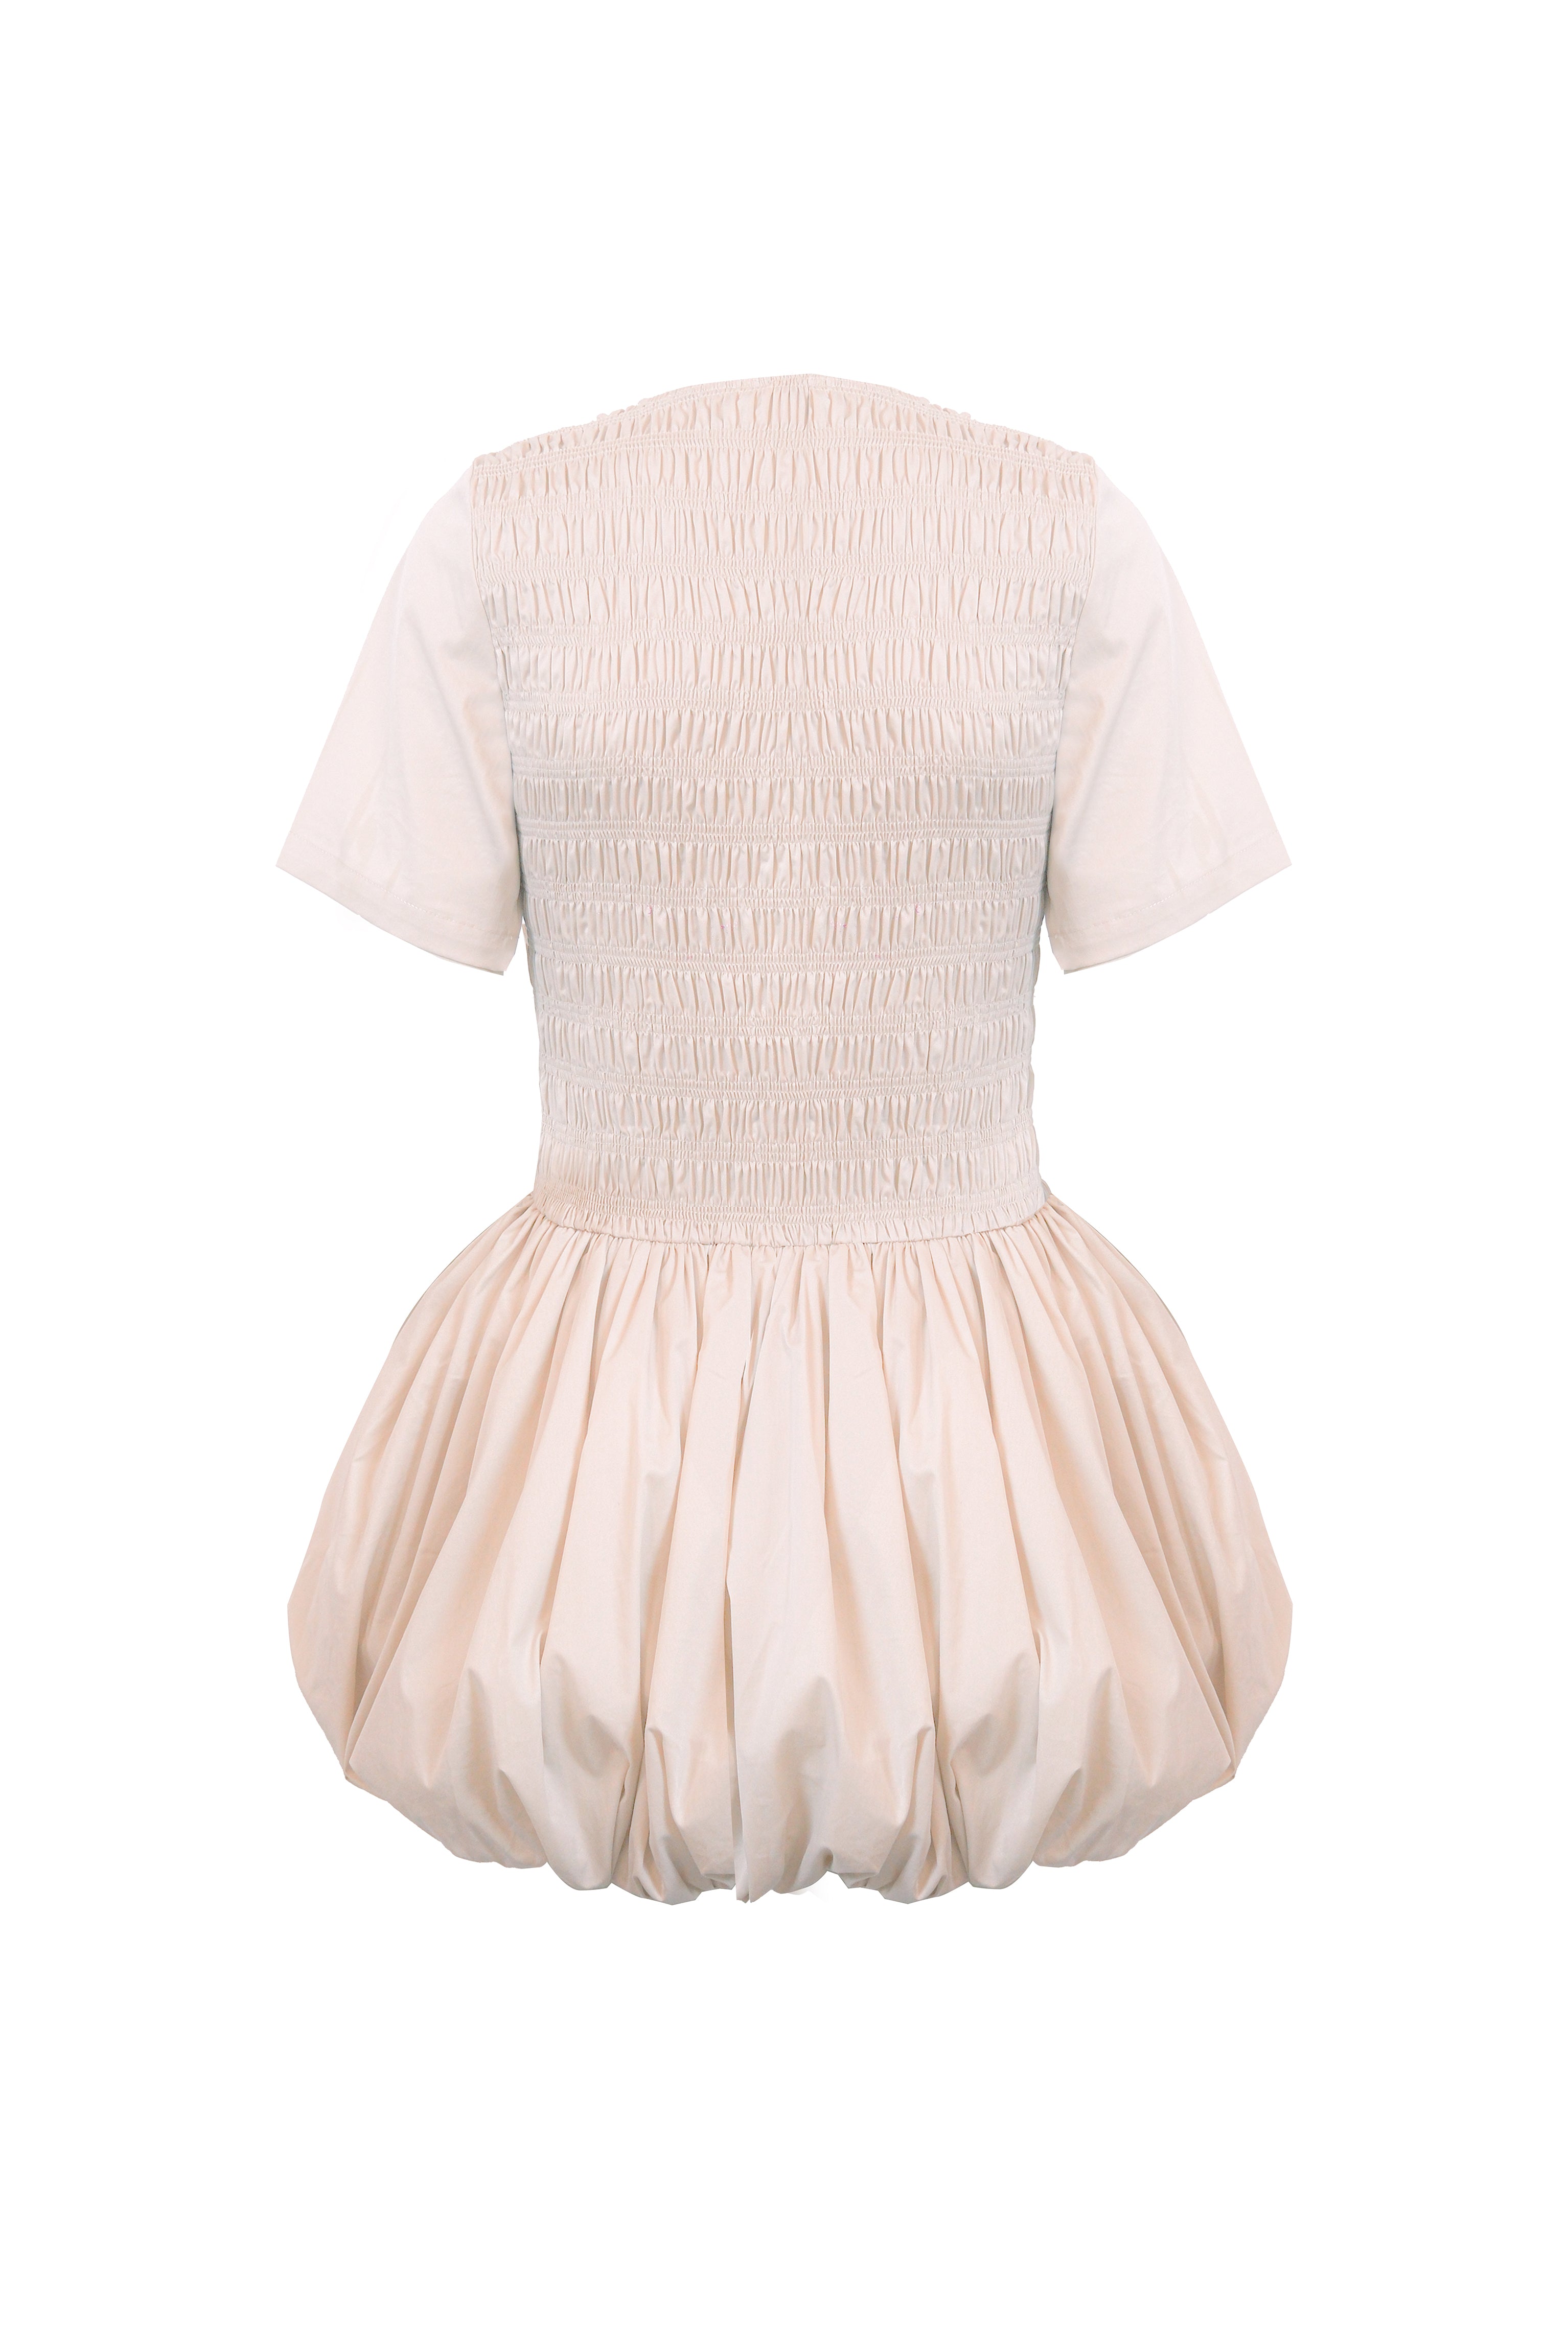 Elenor Milk Puffball Mini Dress